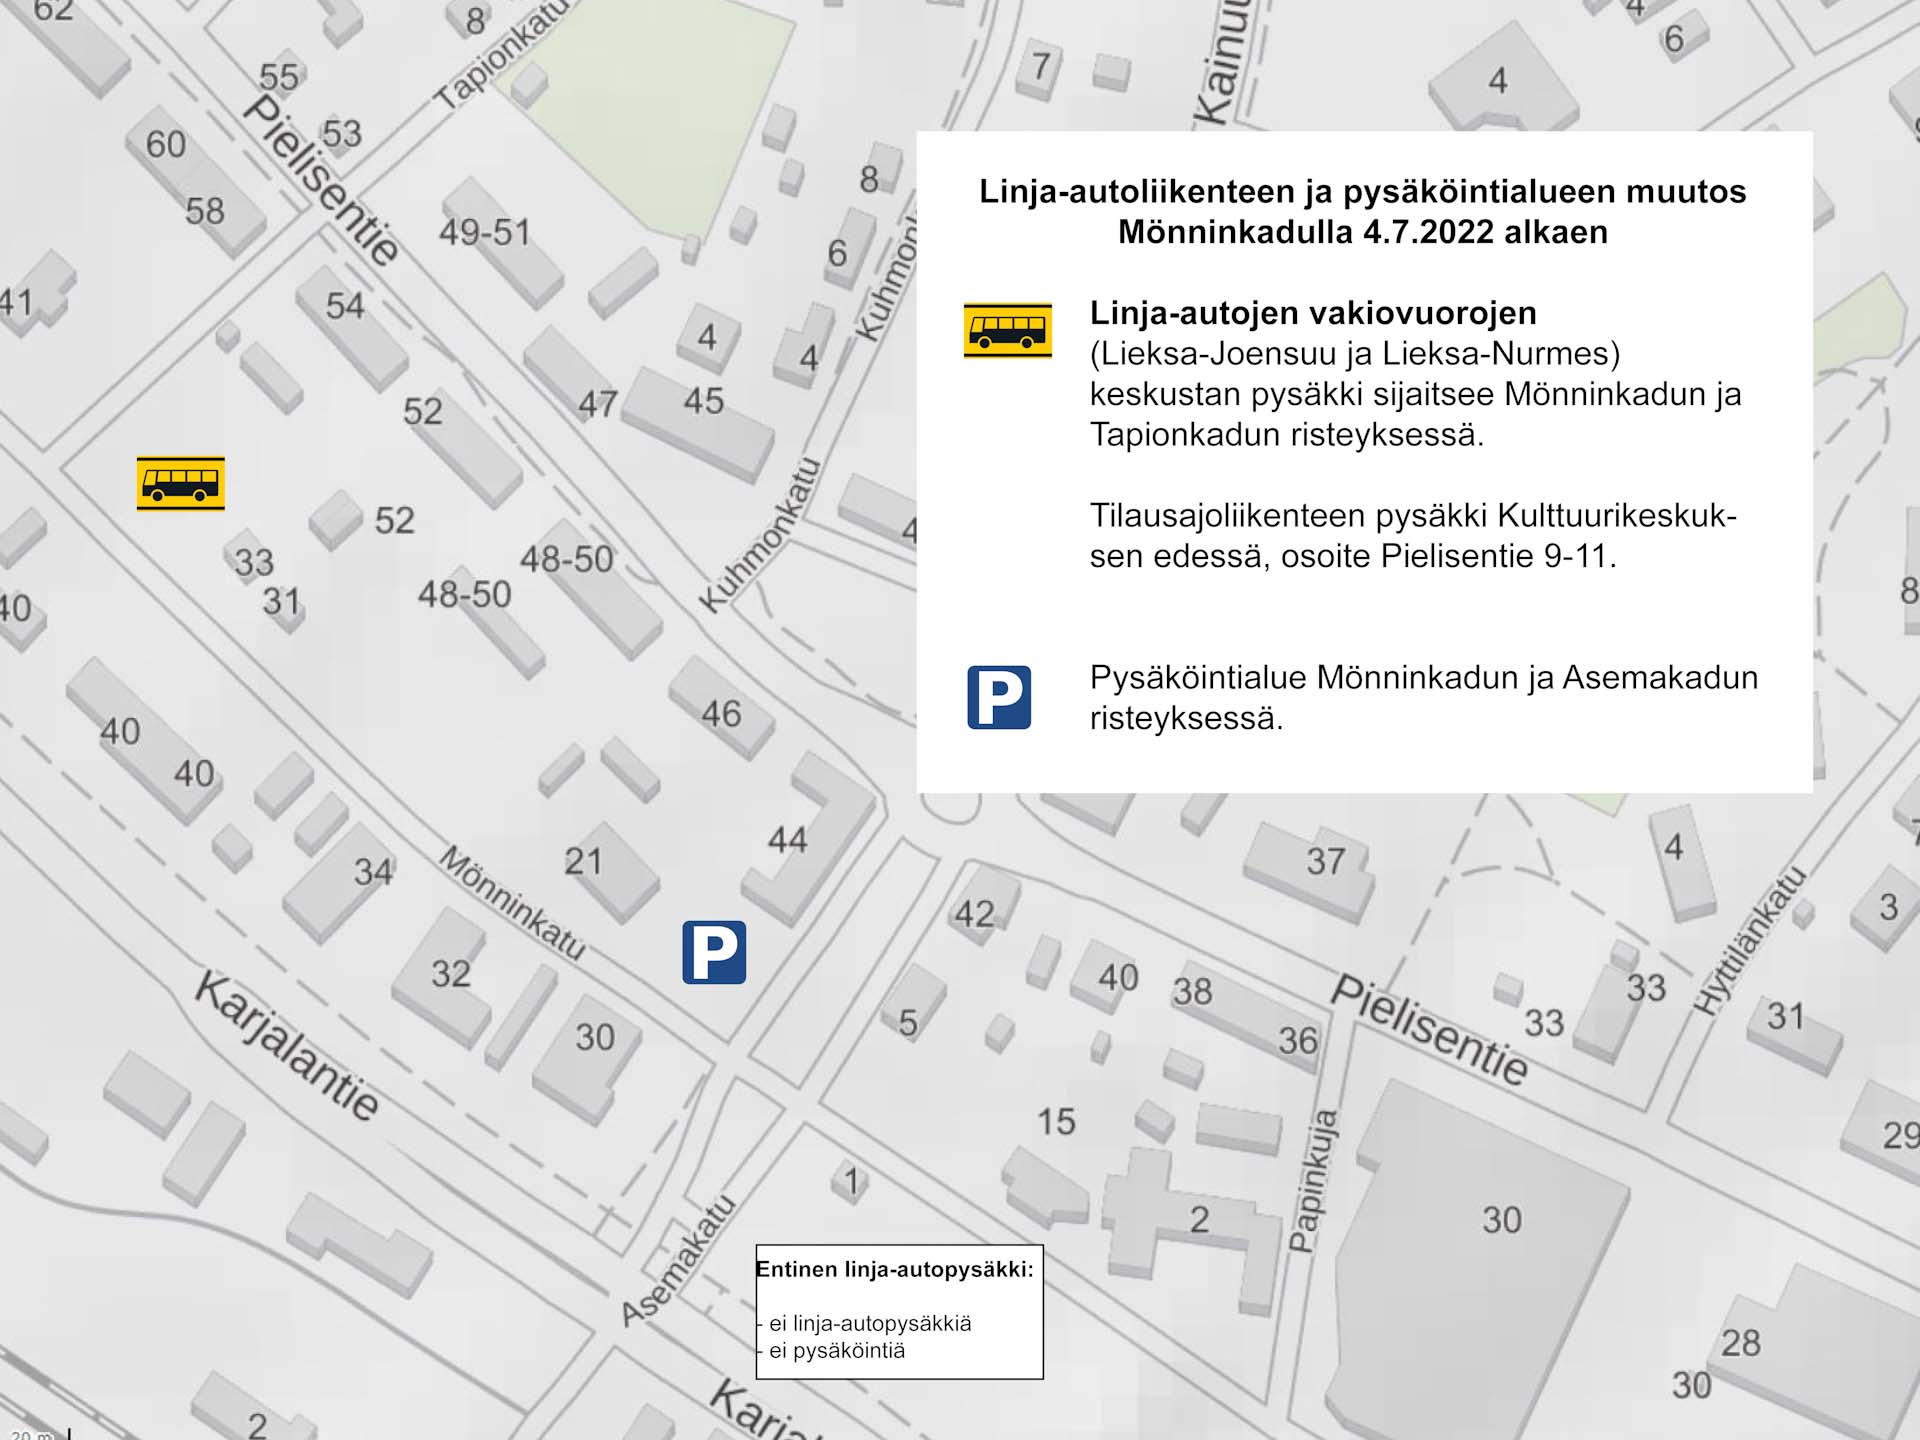 Mönninkadun muutokset kartalla. Linja-autojen vakiovuorojen (Lieksa-Joensuu ja Lieksa-Nurmes) keskustan pysäkki sijaitsee Mönninkadun ja Tapionkadun risteyksessä. Tilausajoliikenteen pysäkki Kulttuurikeskuksen edessä, osoite Pielisentie 9-11. Pysäköintialue Mönninkadun ja Asemakadun risteyksessä.